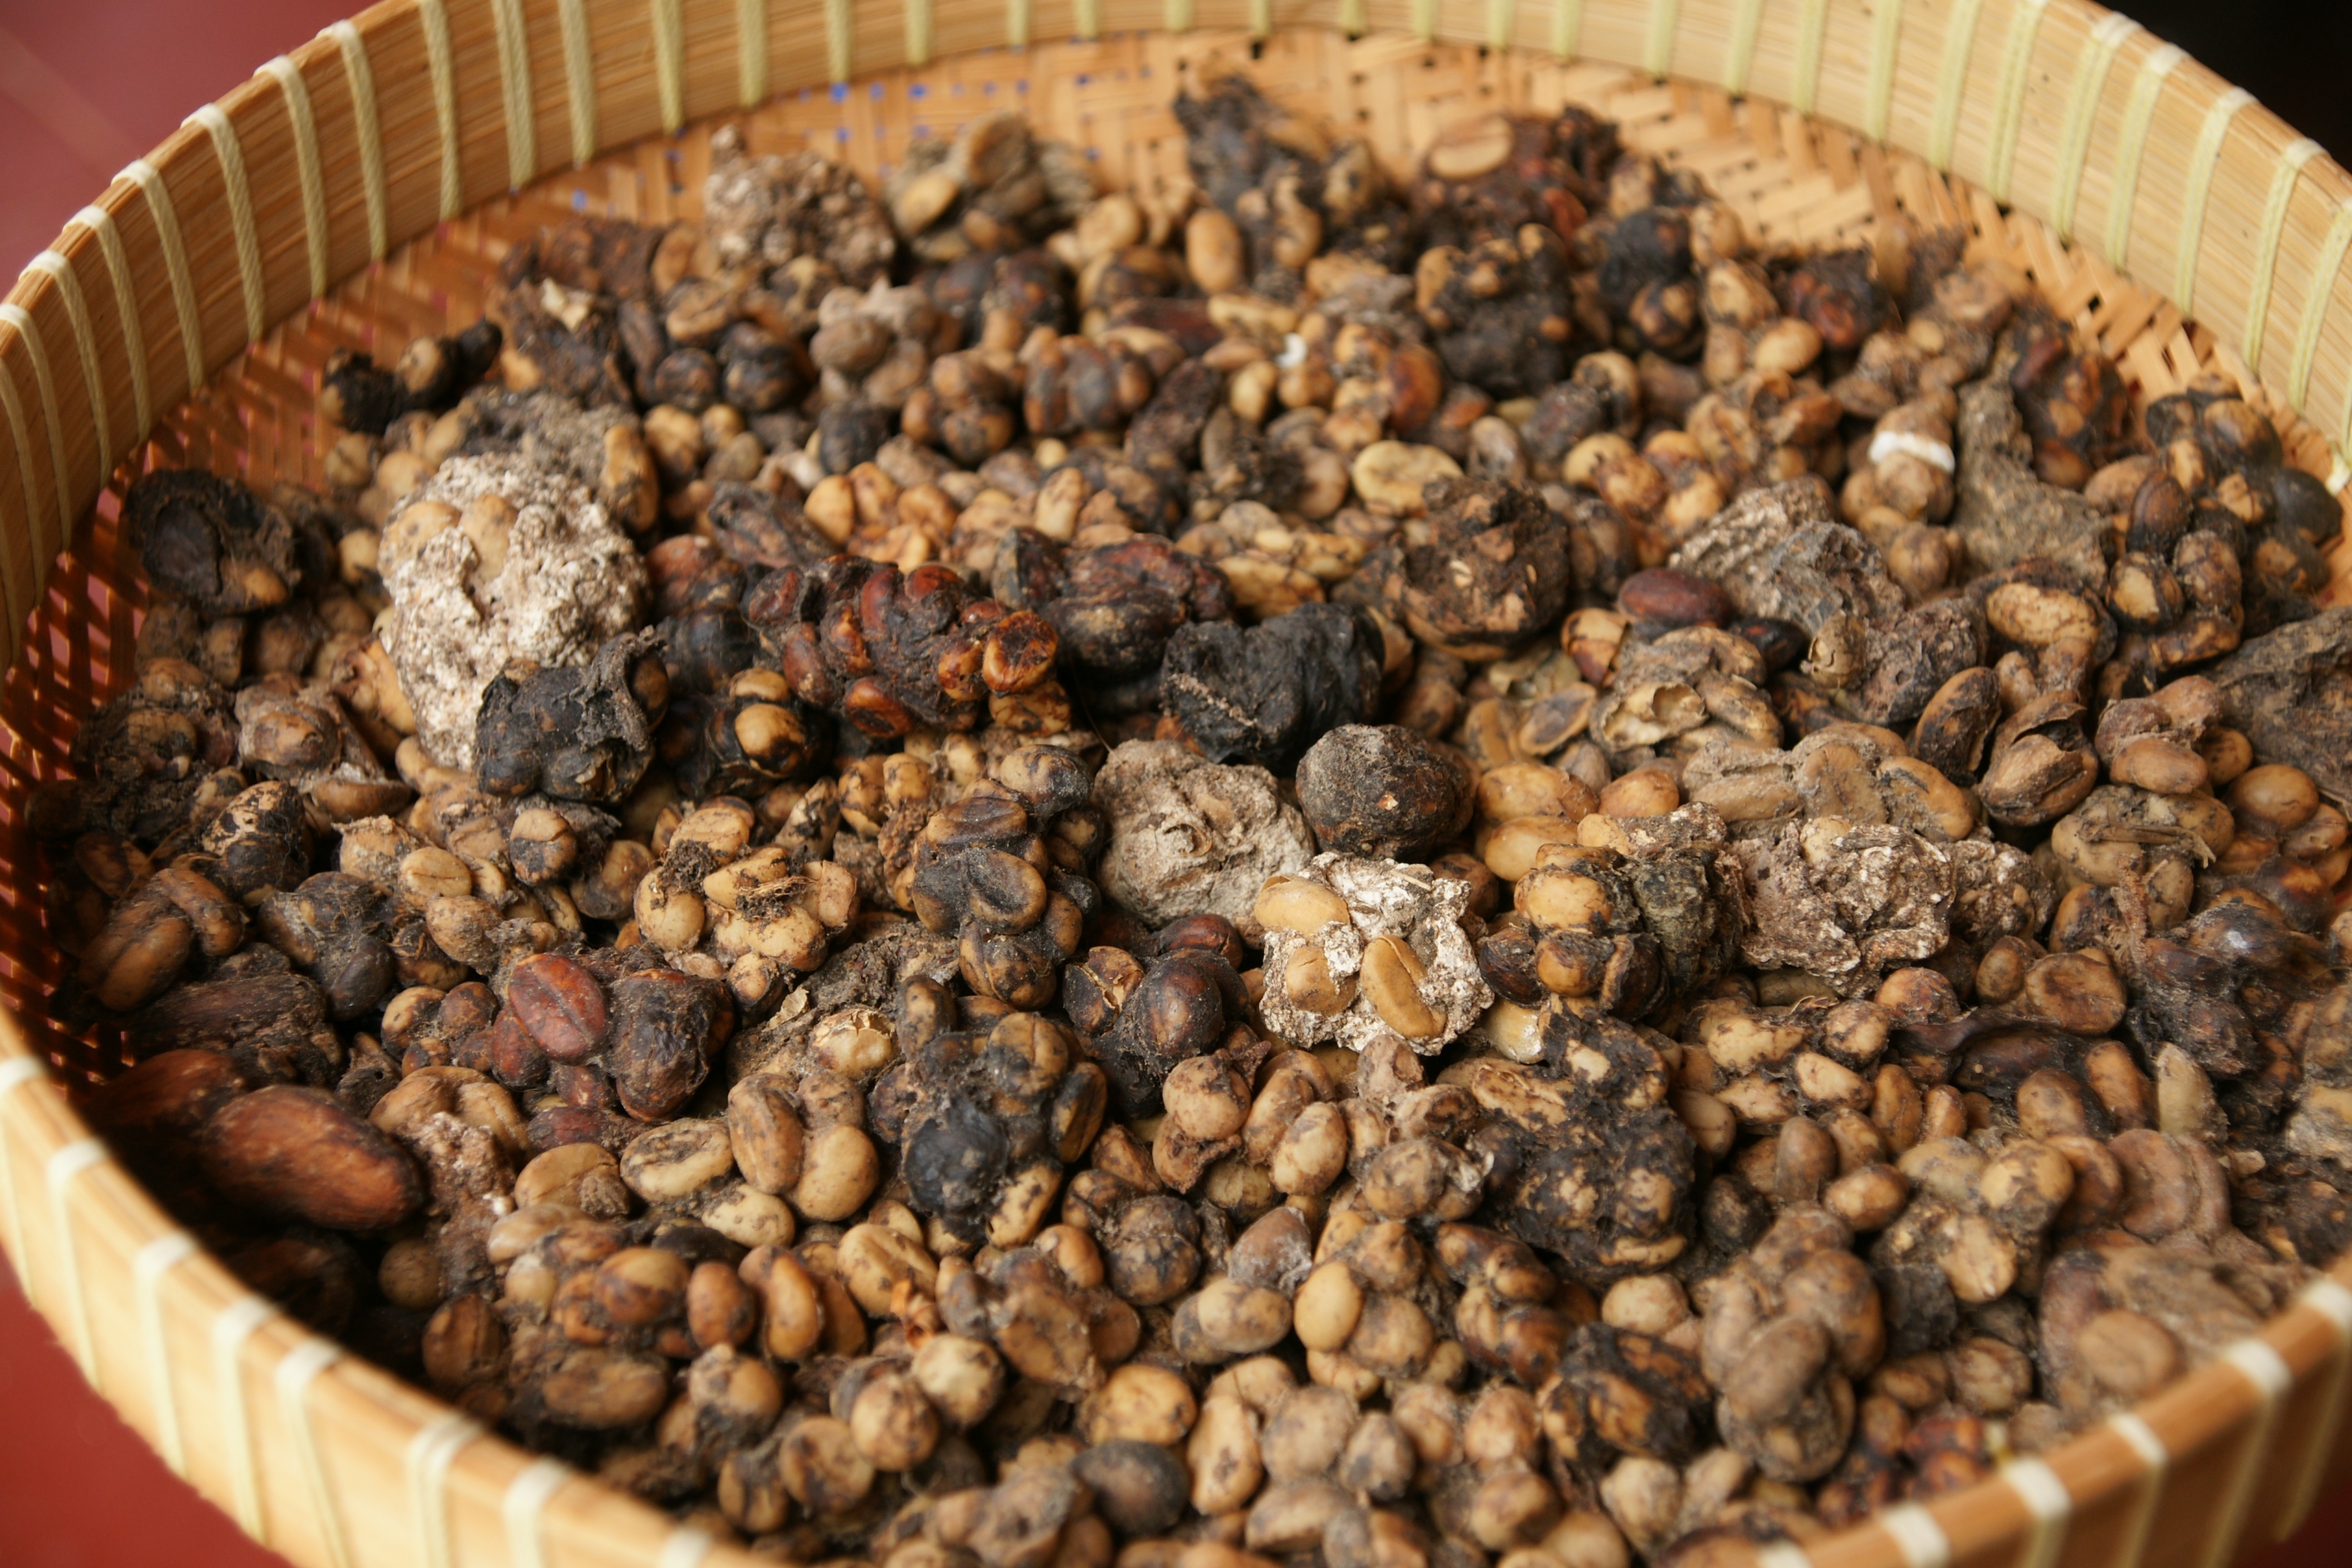 Кофе лювак (luwak):сколько стоит самый дорогой кофе в мире